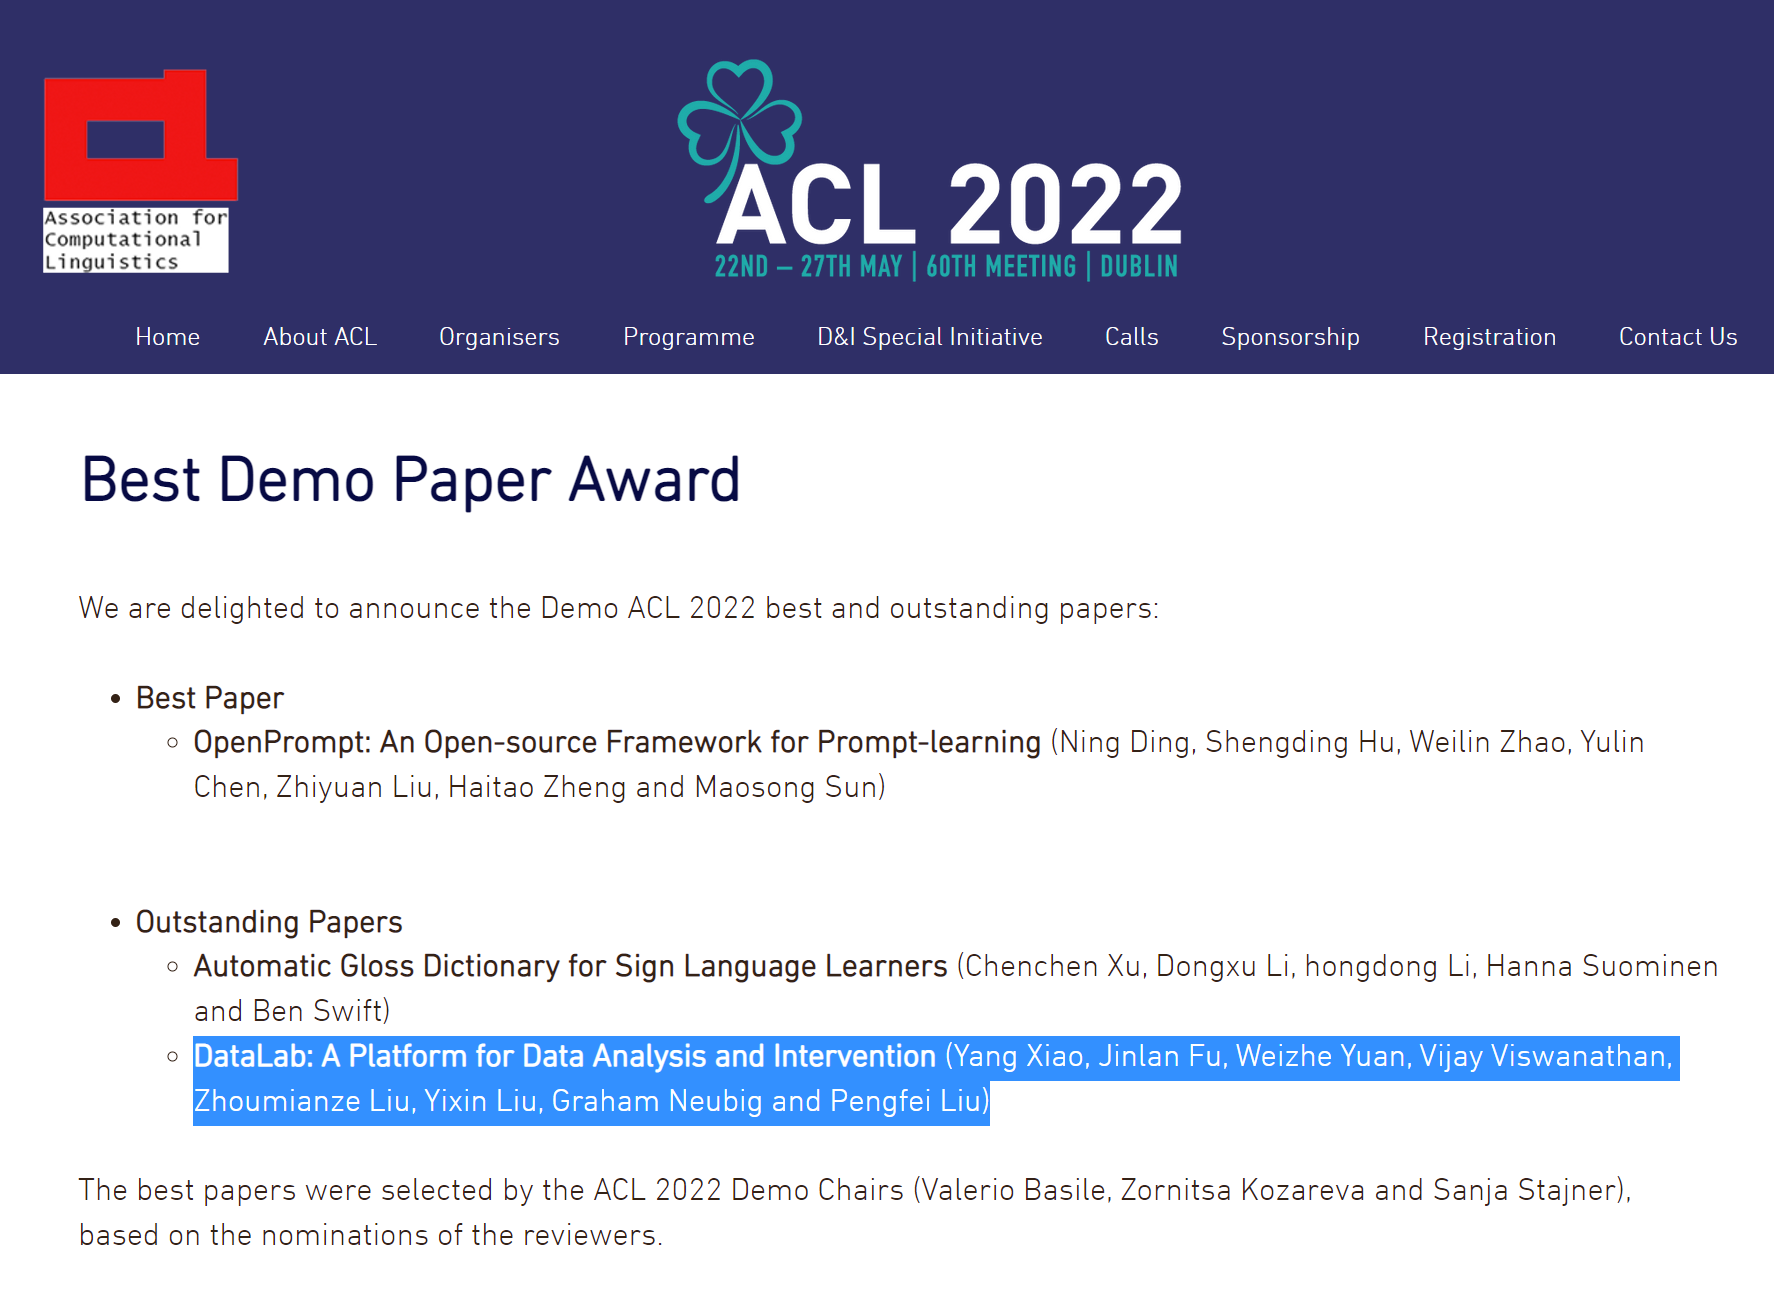 学院大四学生作为第一作者的论文荣获ACL 2022 Outstanding Demo Paper Award